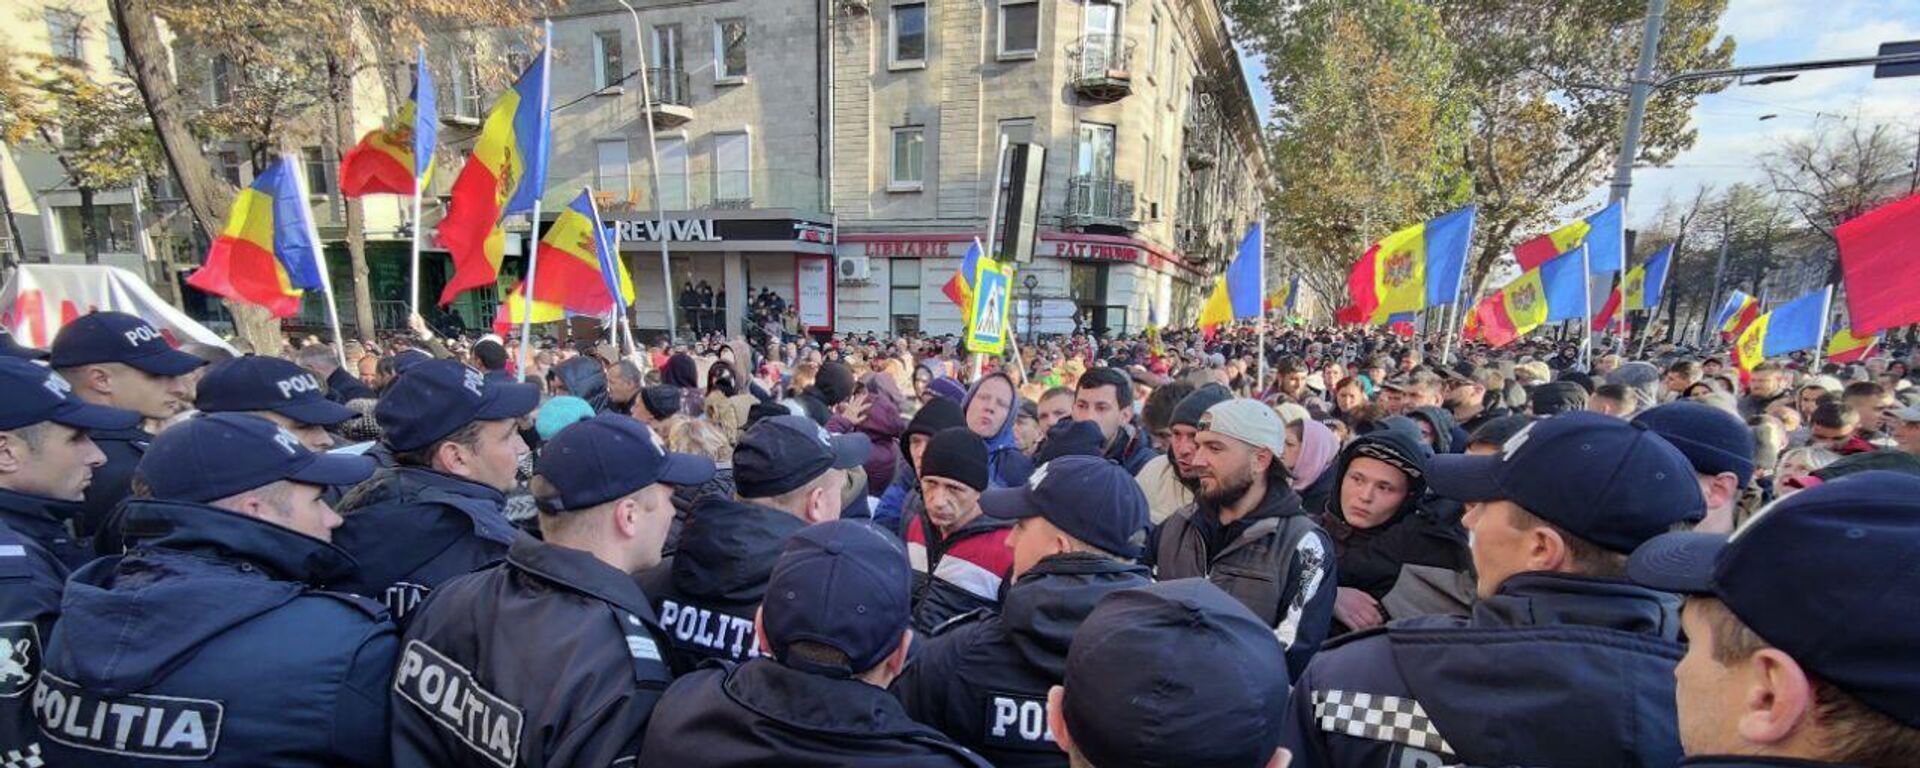 Массовый антиправительственный митинг в Кишиневе 23.10.2022 - Sputnik Молдова, 1920, 23.10.2022